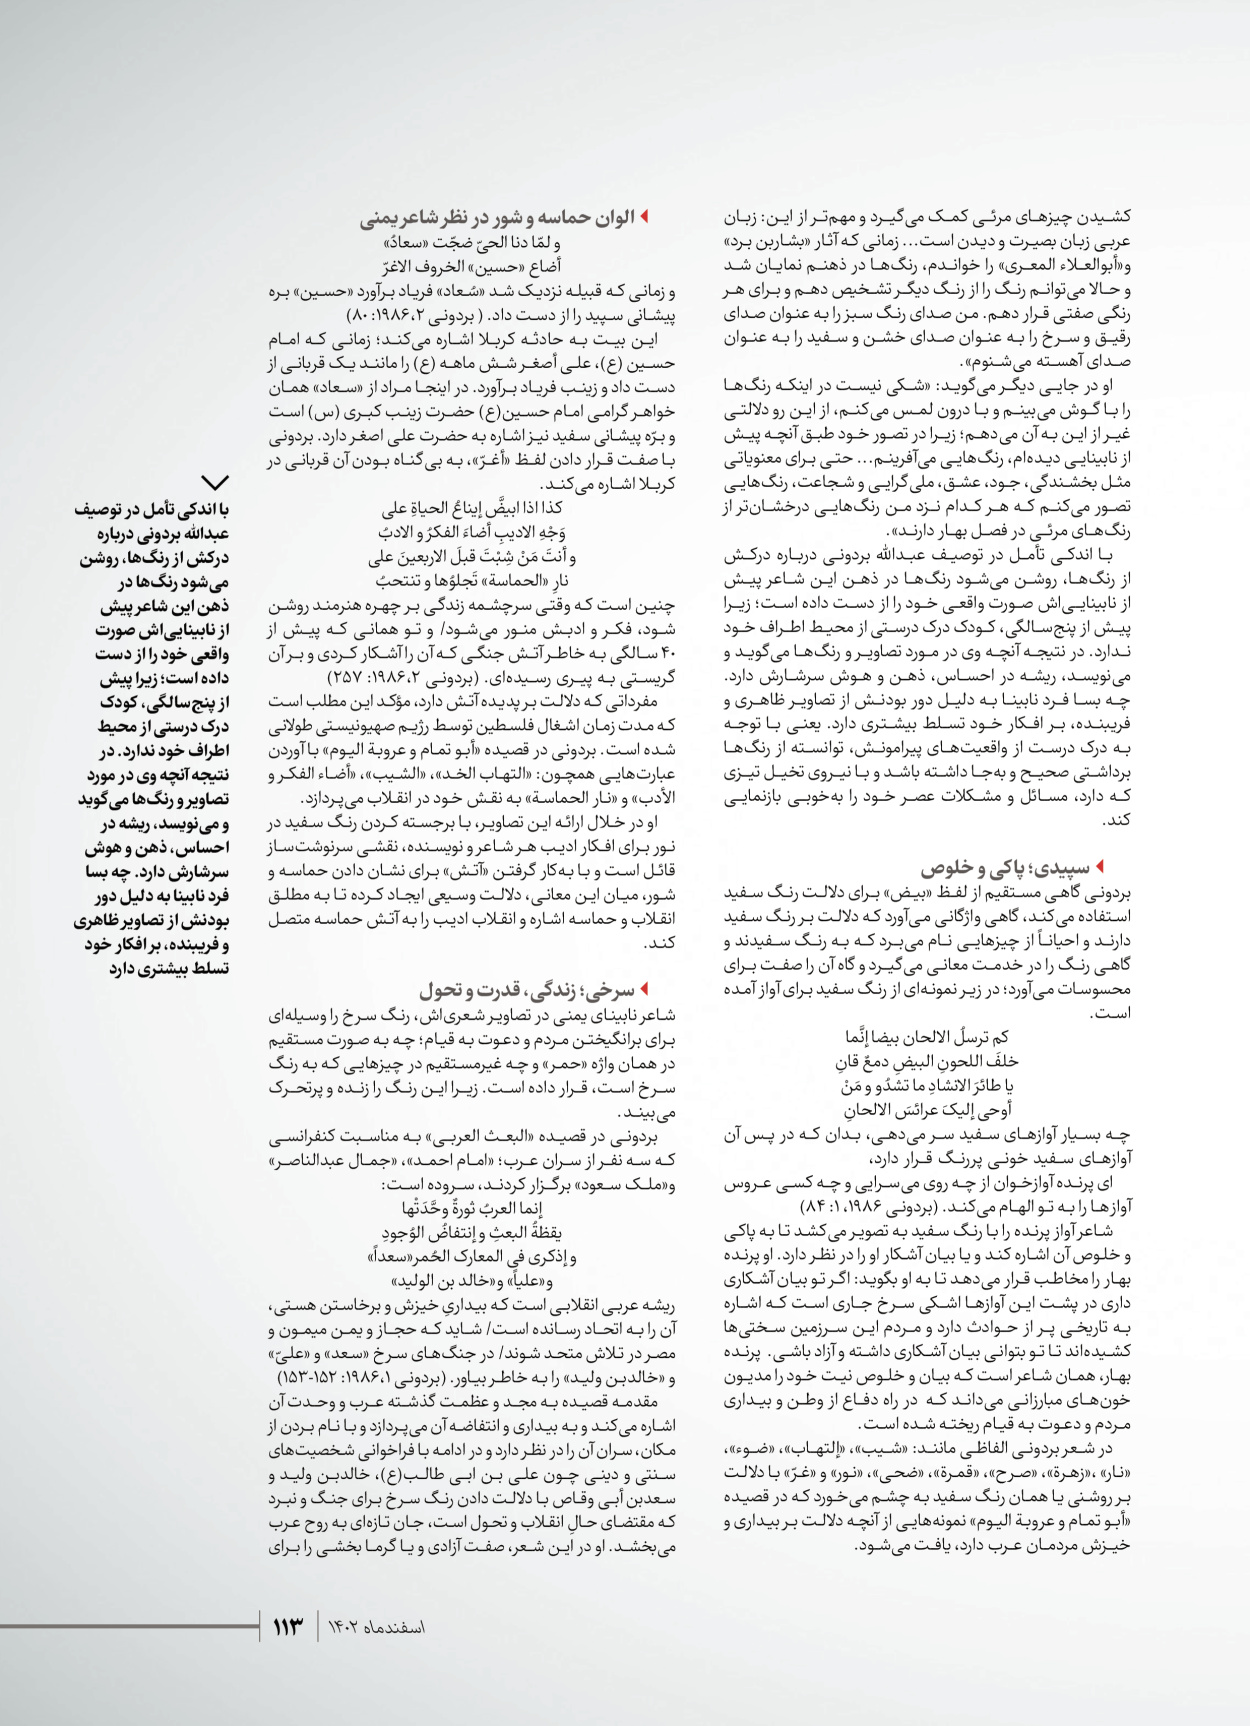 روزنامه ایران - ویژه نامه شهدای قدس ۴ - ۰۱ اسفند ۱۴۰۲ - صفحه ۱۱۳